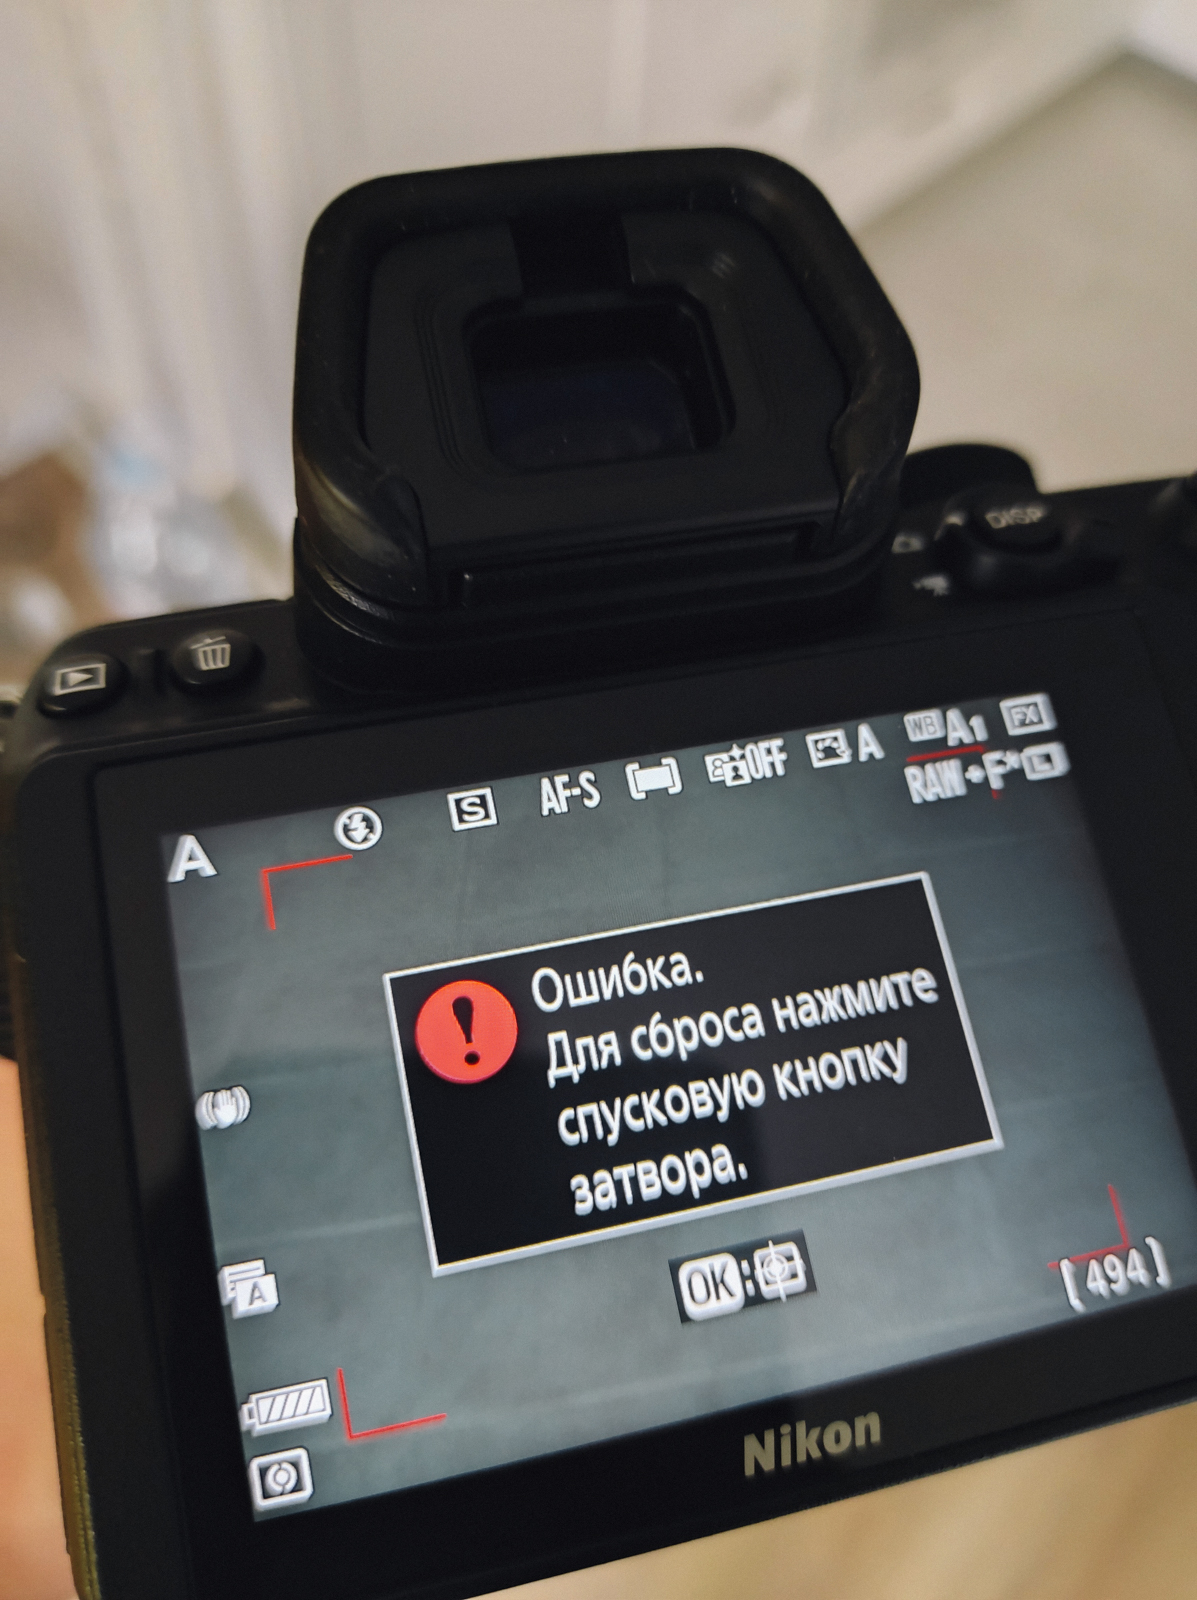 Тест-обзор Nikon Z5 и немного про объективы Nikkor — Российское фото